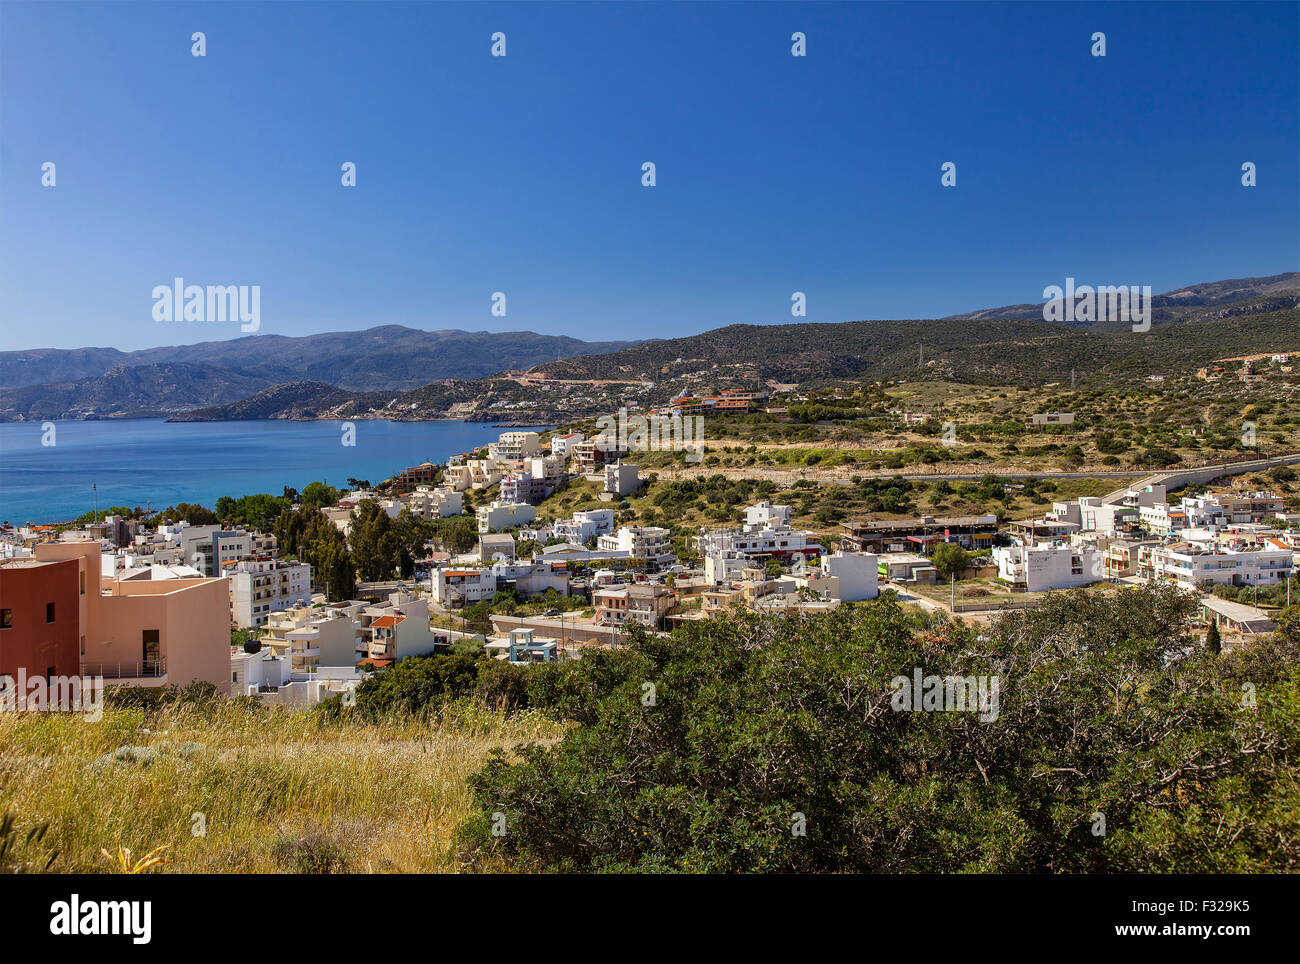 Vue aérienne d'Agios Nikolaos, sur la côte est de la Crète, Grèce. Banque D'Images